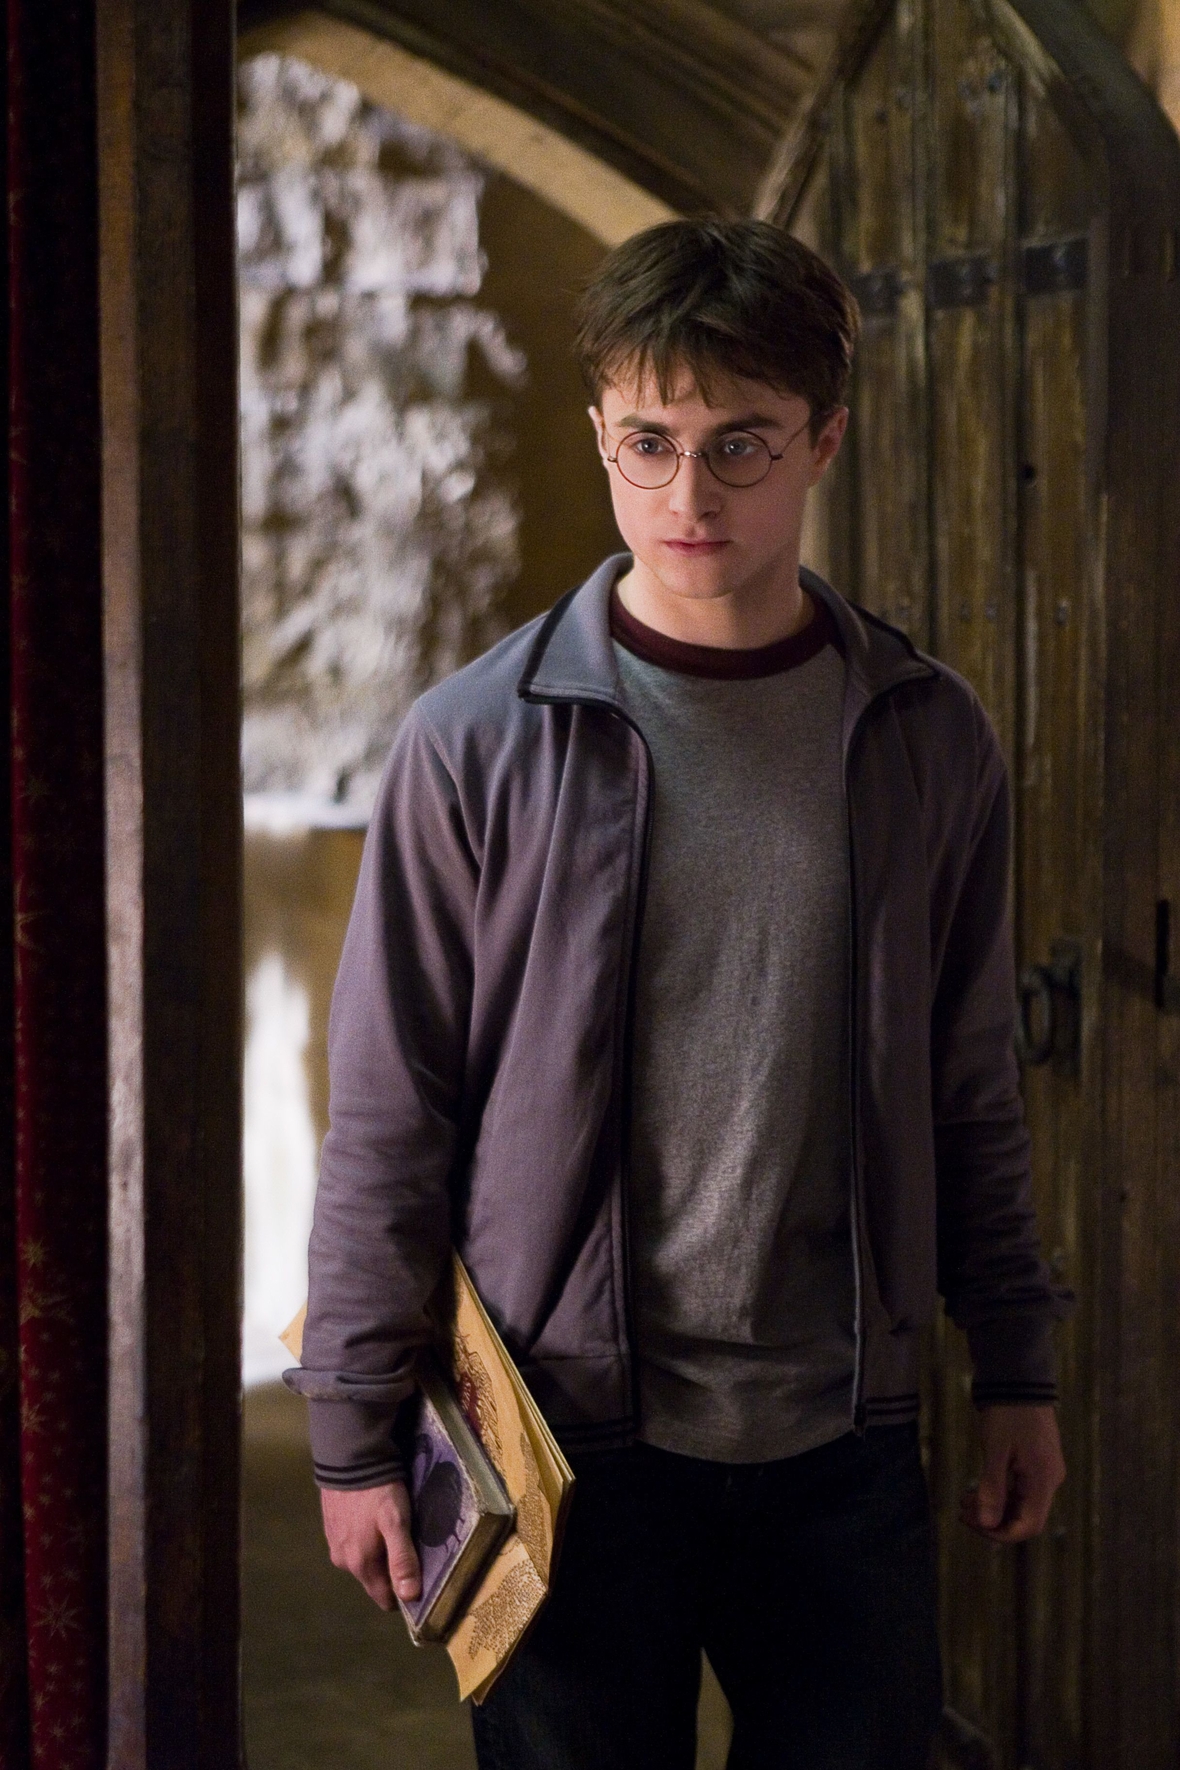 Szenenbild: Harry steht nachdenklich blickend in einer Tür. Er muss die Schlacht gegen Lord Voldemortvorbereiten.